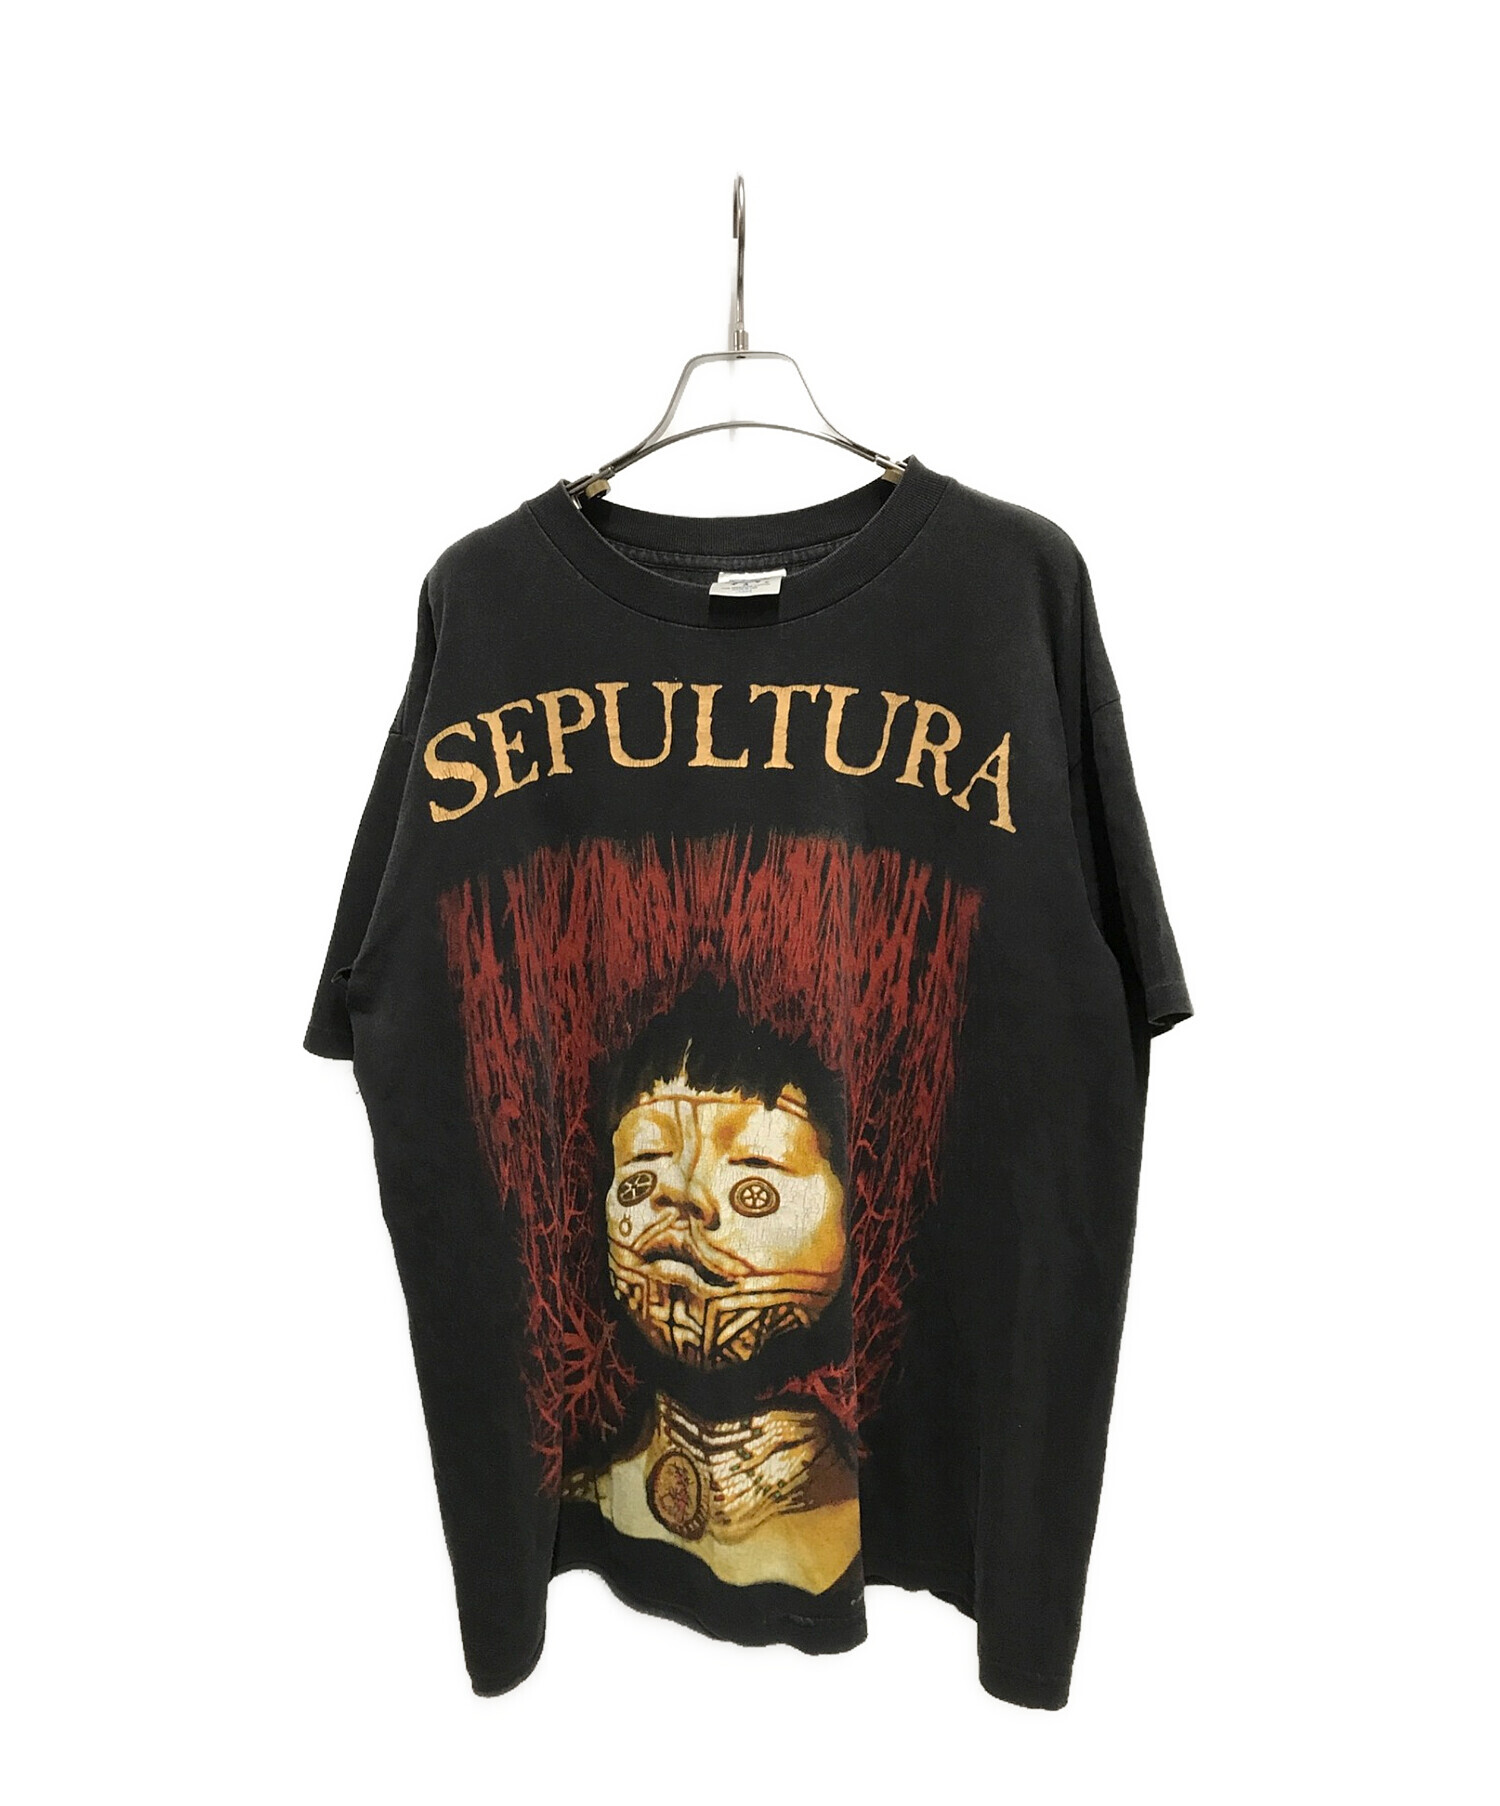 SEPULTURA (セパルトゥラ) 90’sヴィンテージプリントTシャツ ブラック サイズ:L